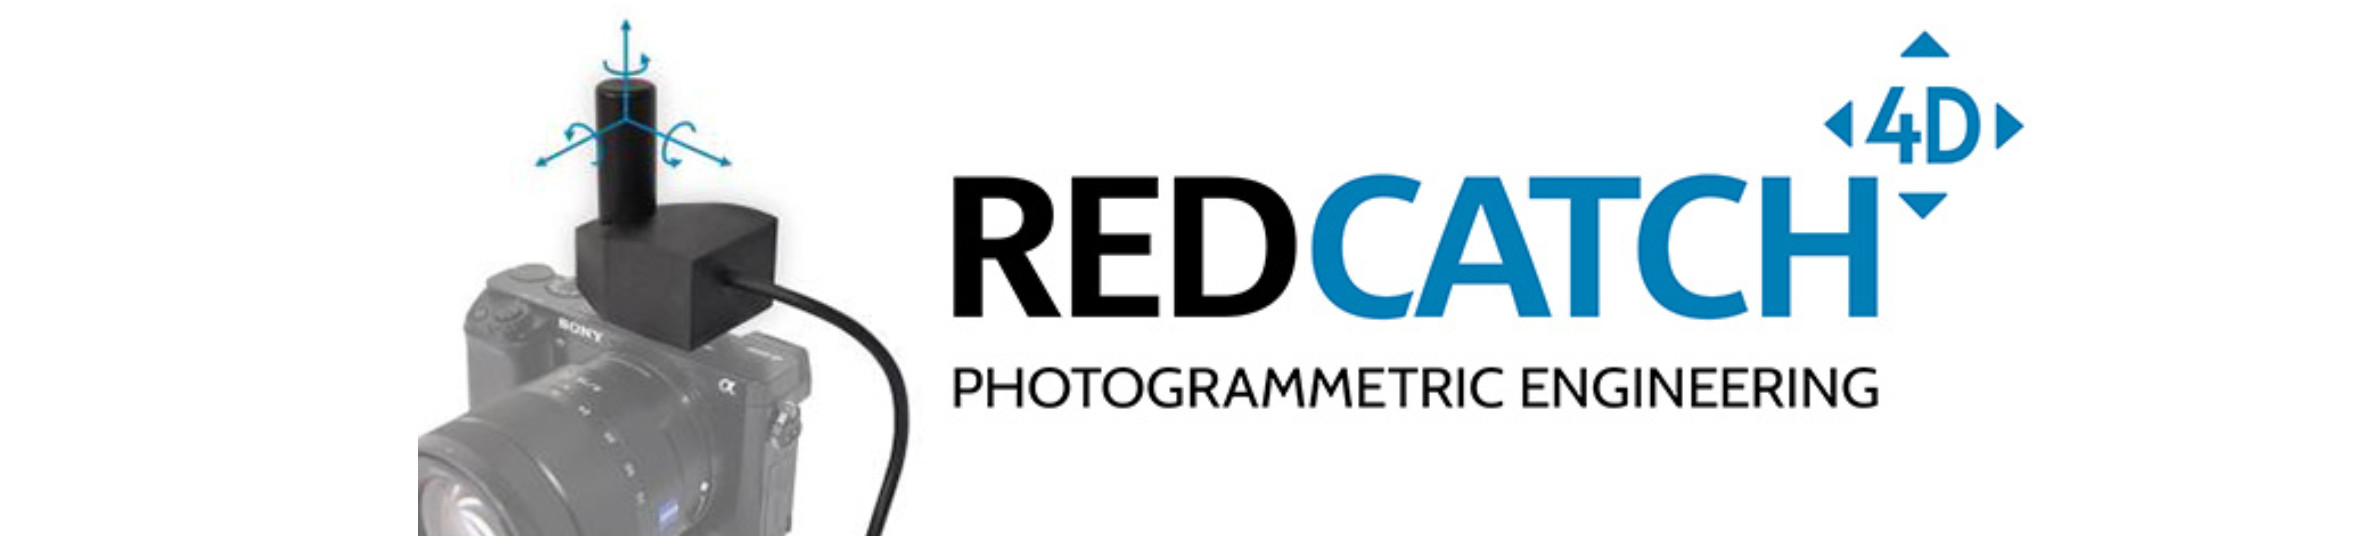 redcatch-logo-intergeo2018.jpg